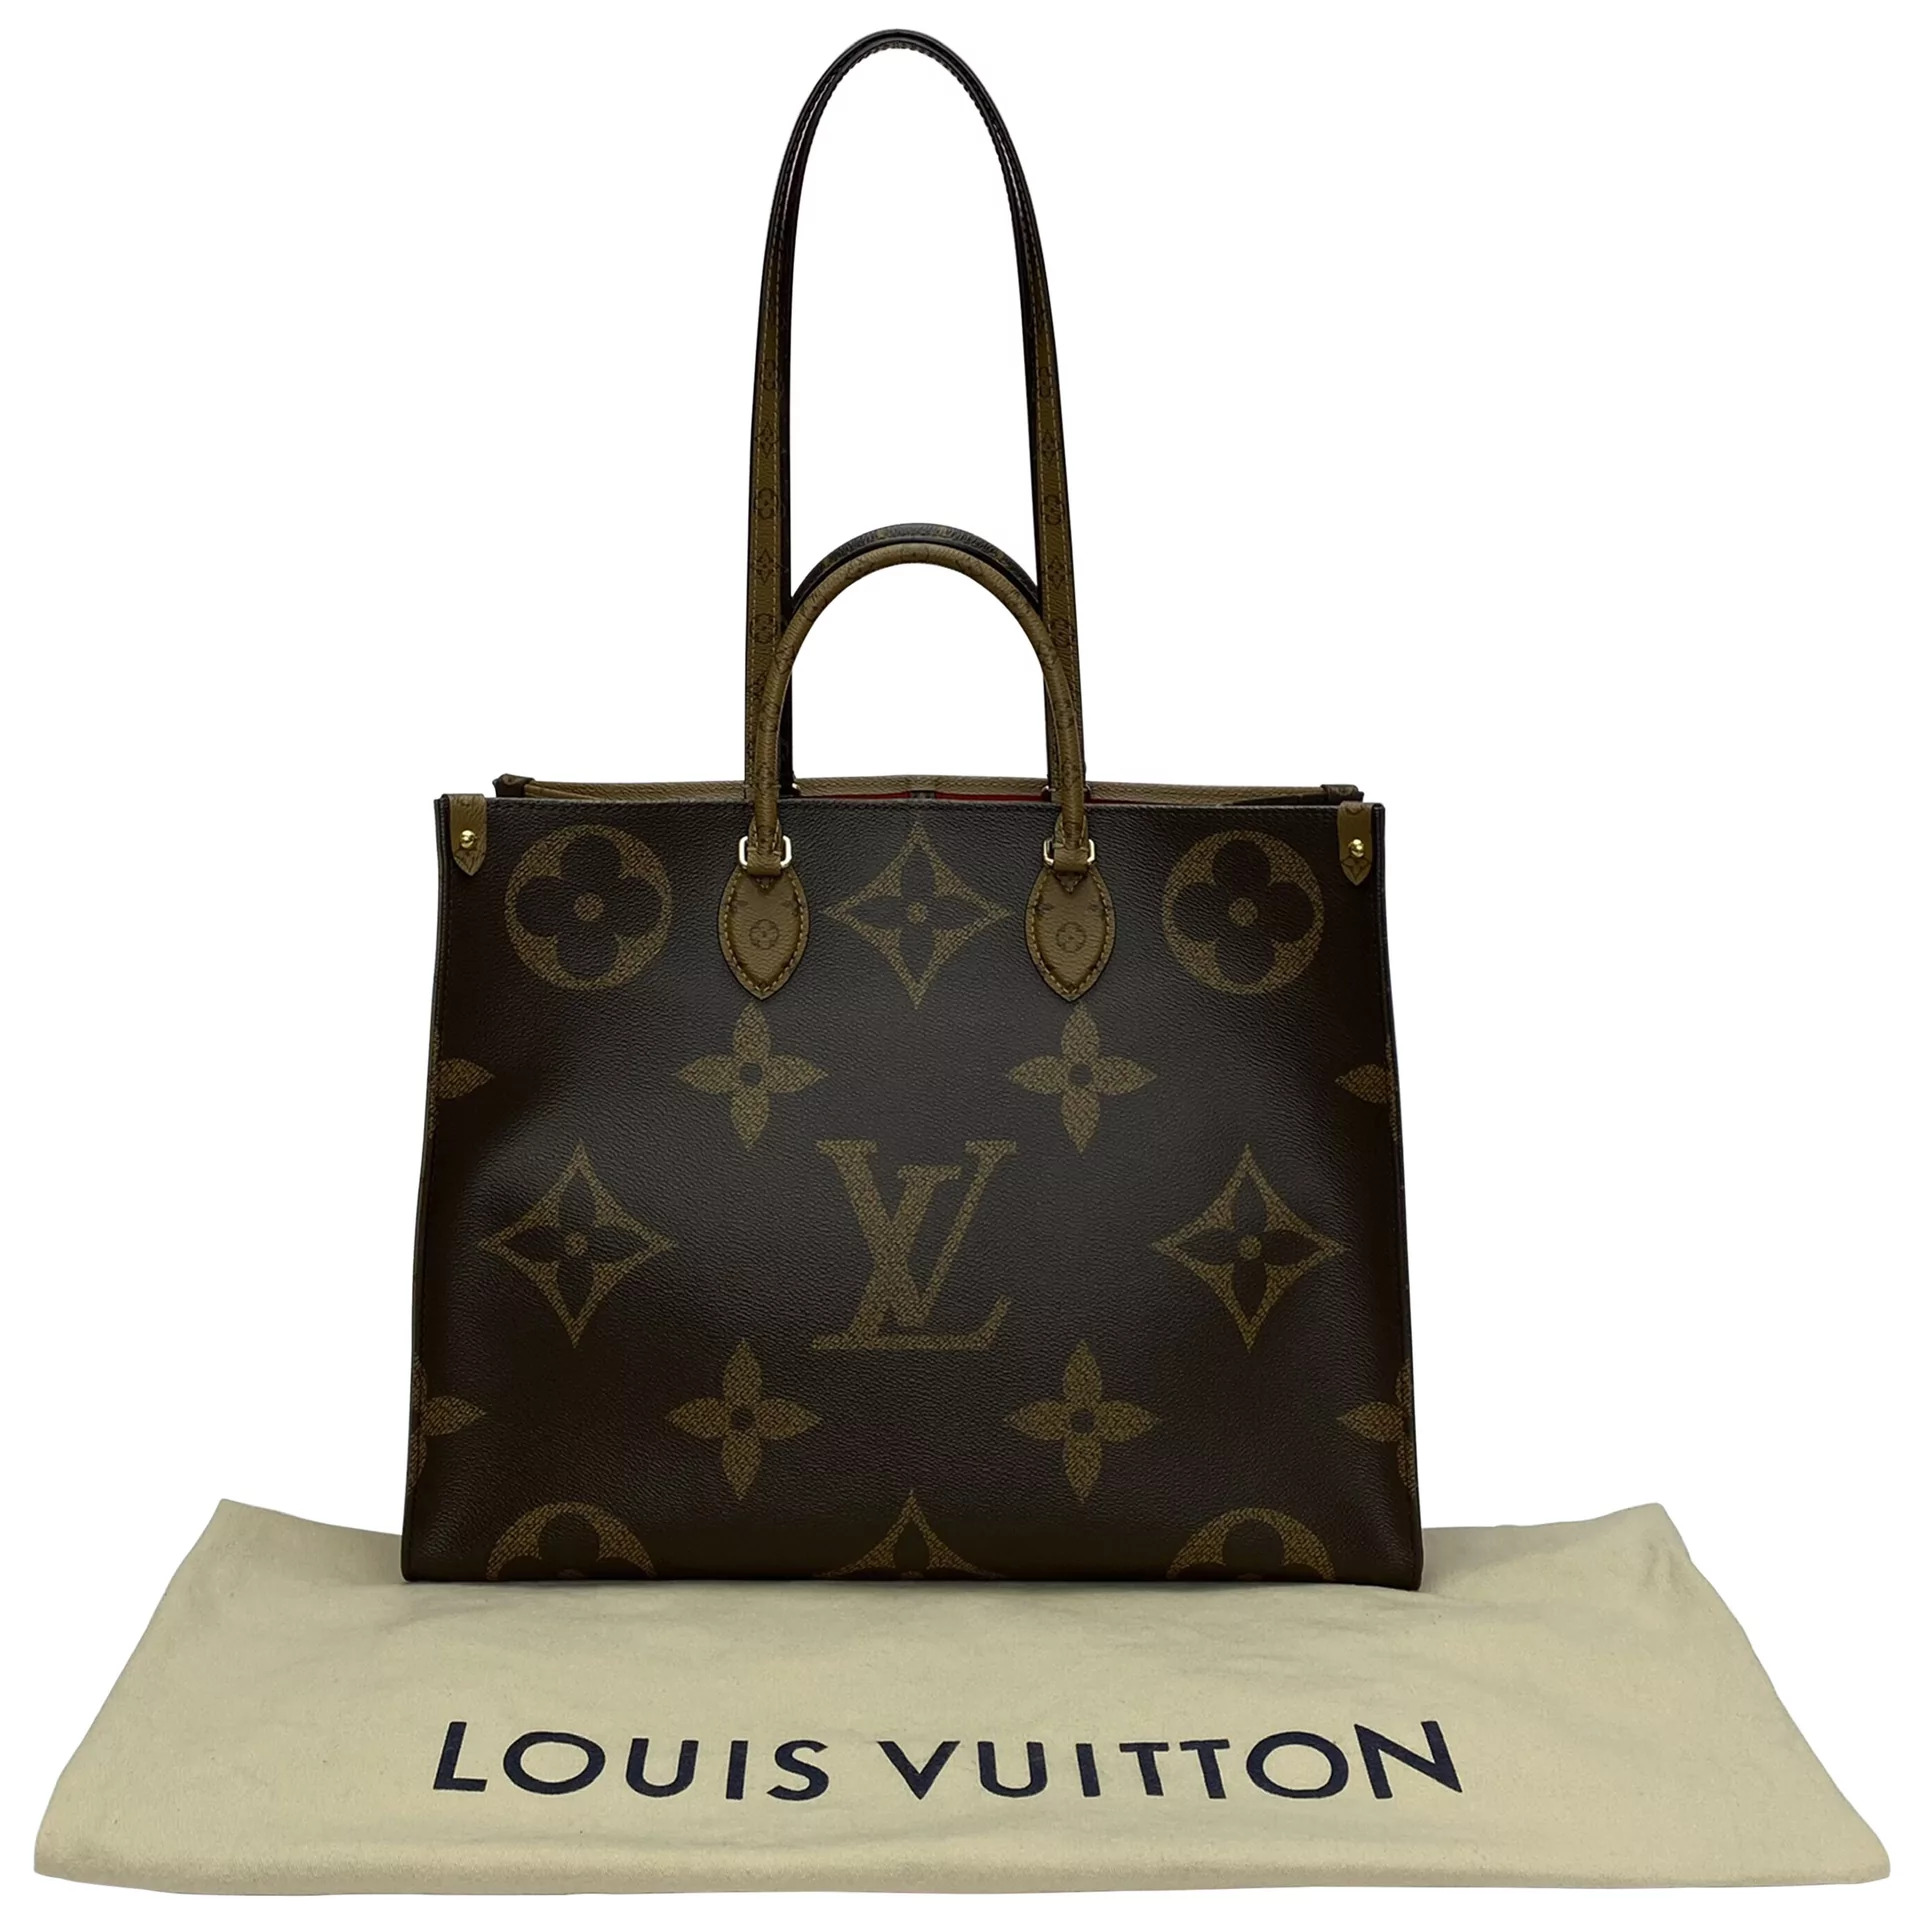 SOBRE QUASE TUDO — Louis Vuitton estreia no mundo das fragrâncias